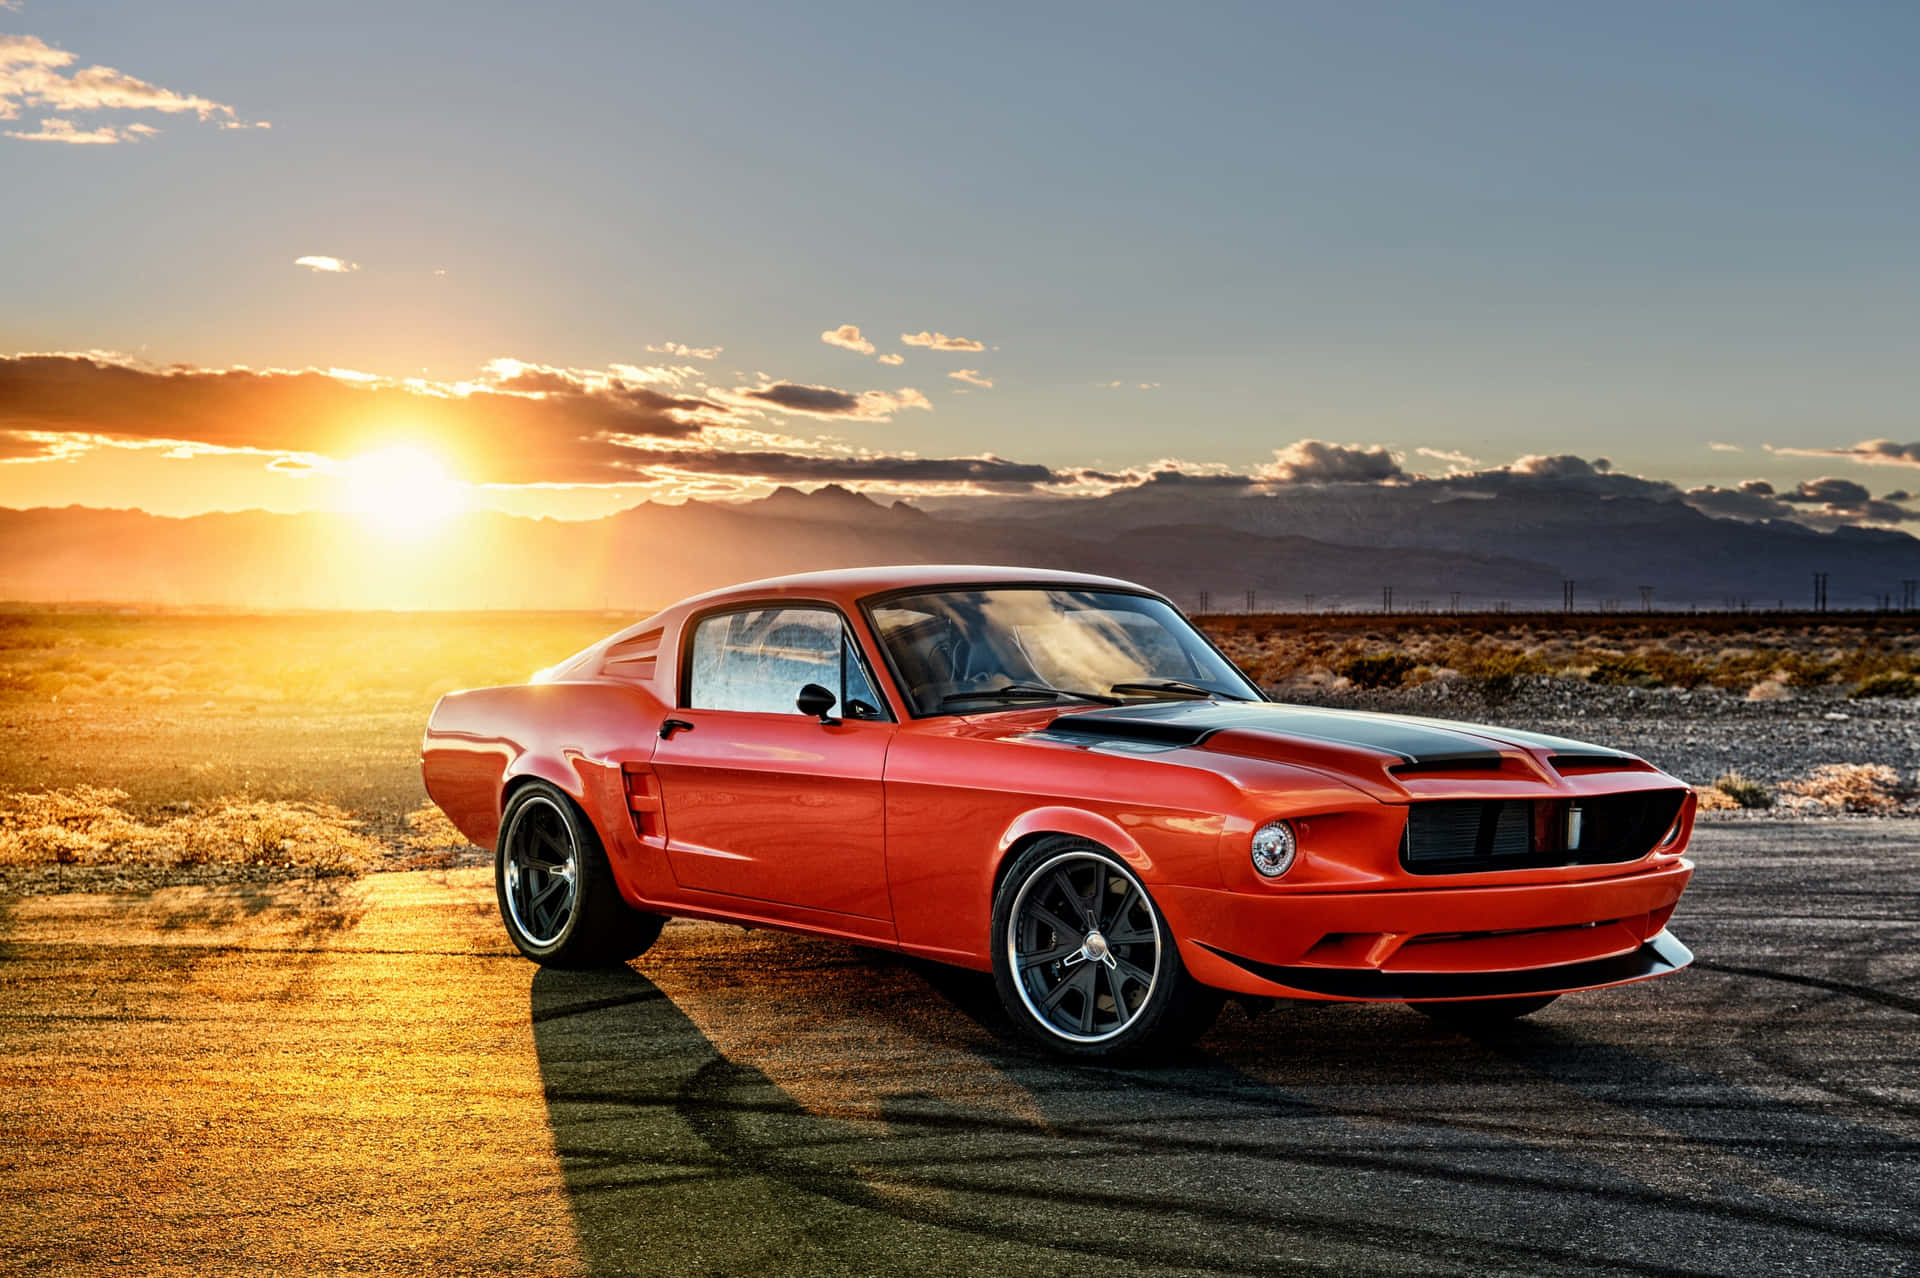 En rød Mustang parkeret i ørkenen ved solnedgang